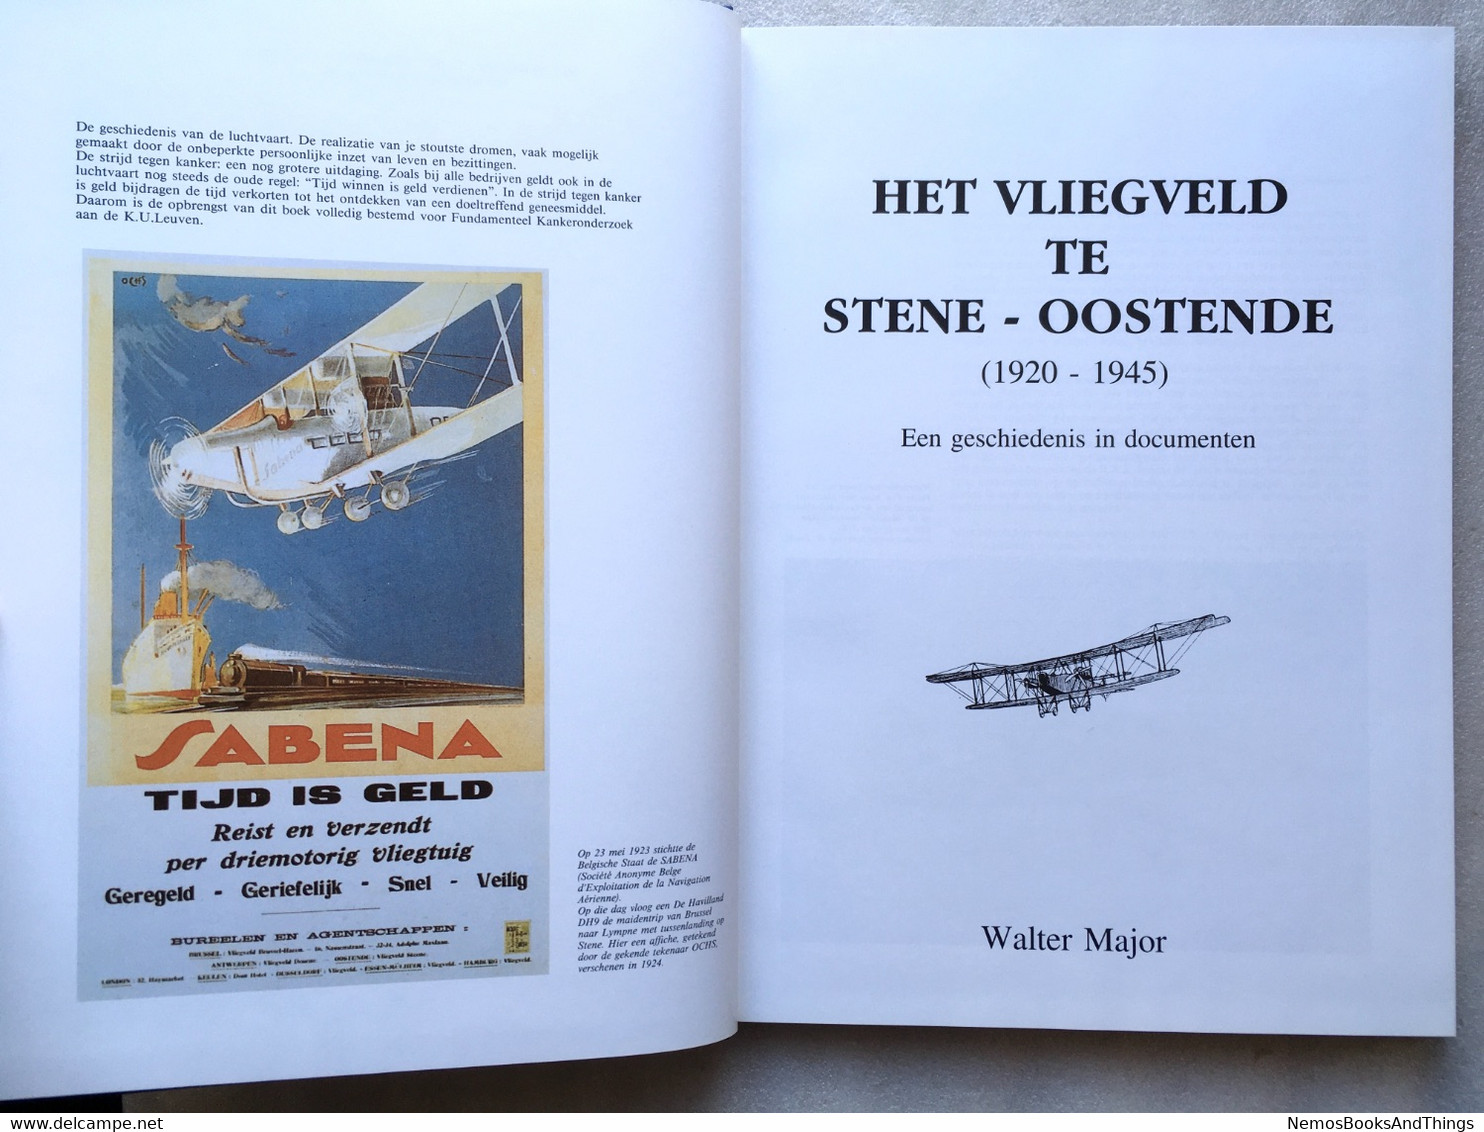 Het Vliegveld Te Stene - Oostende (1920-1945) Geschiedenis In Documenten - 1500 Ex. - 1993 - W Major  - Luchtvaart - Historia